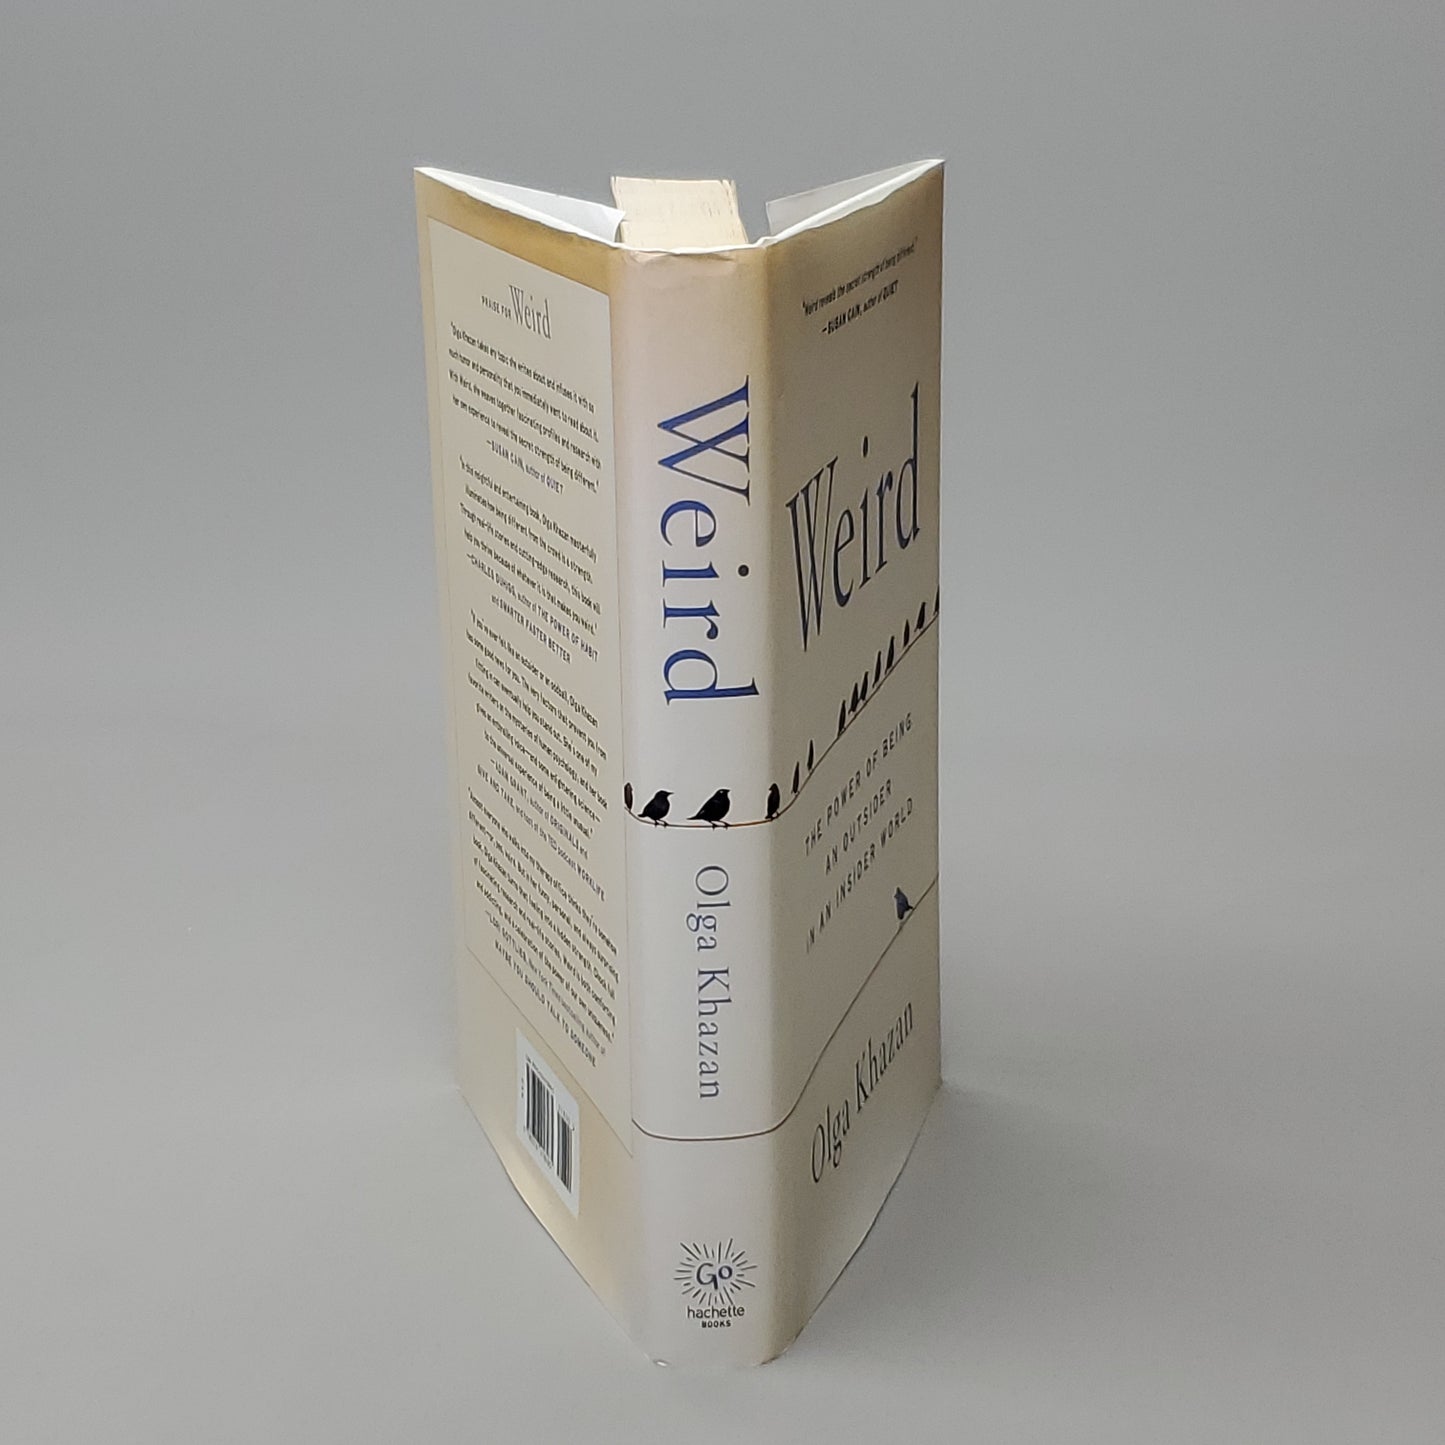 WEIRD by Olga Khazan Book Hardback (New)